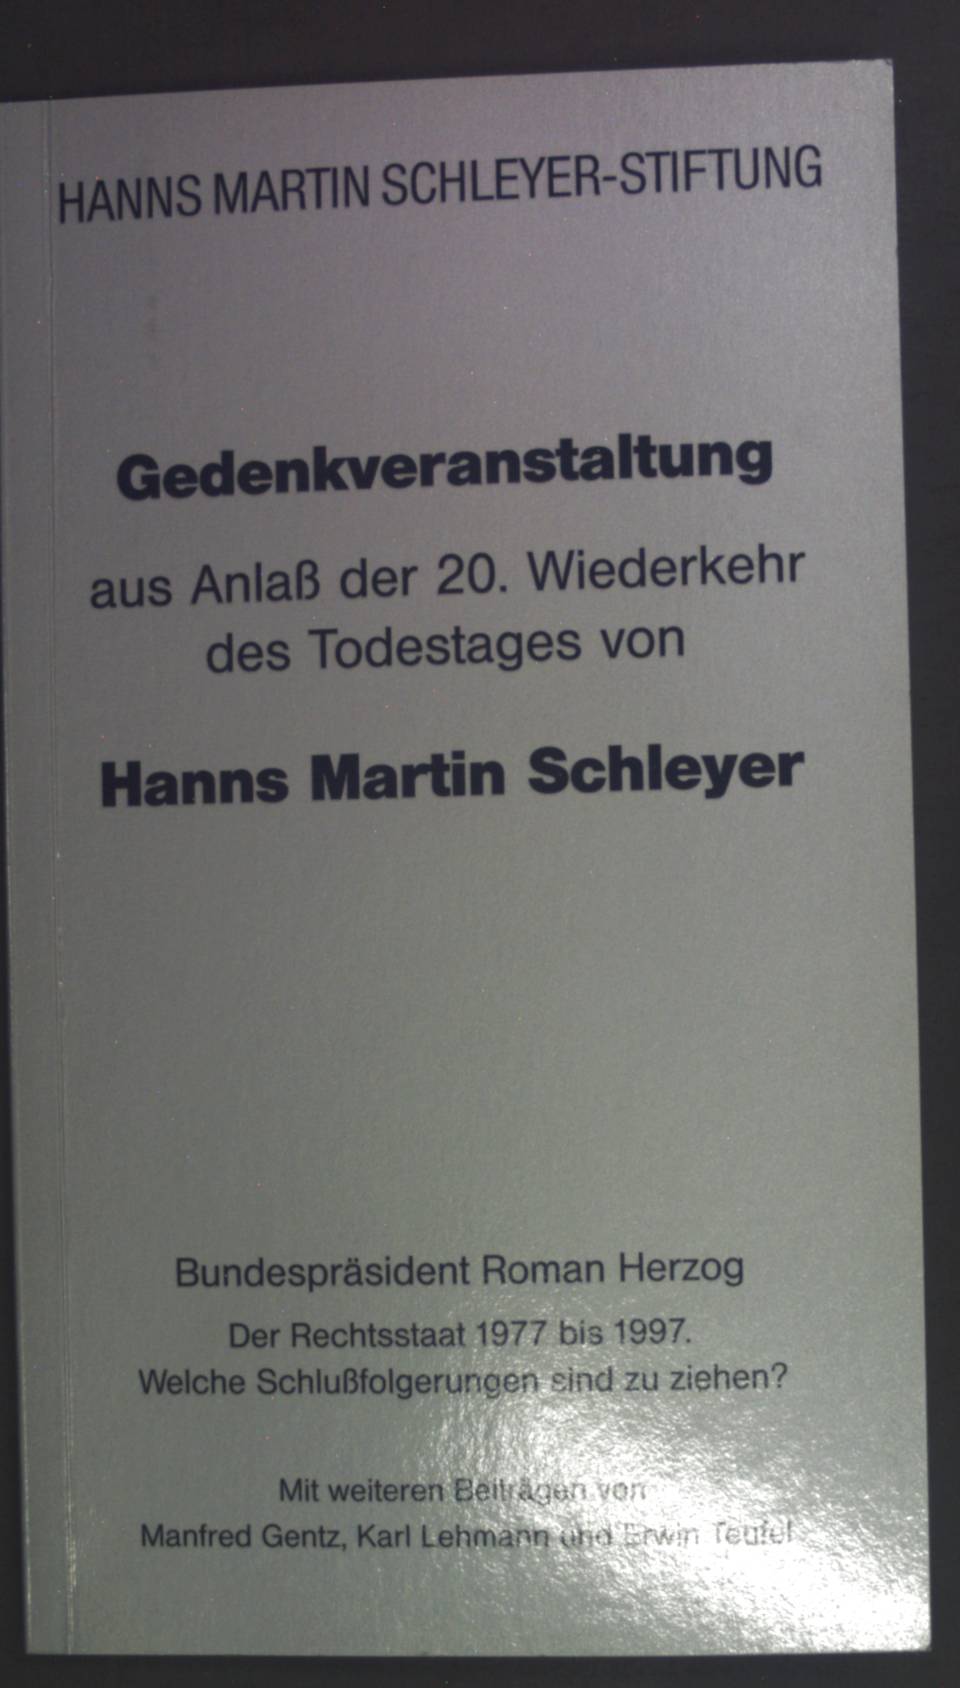 Gedenkveranstaltung: Anlässlich der Wiederkehr des 20. Todestages von Hanns Martin Schleyer (Veröffentlichung der Hanns Martin Schleyer-Stiftung, Forum)